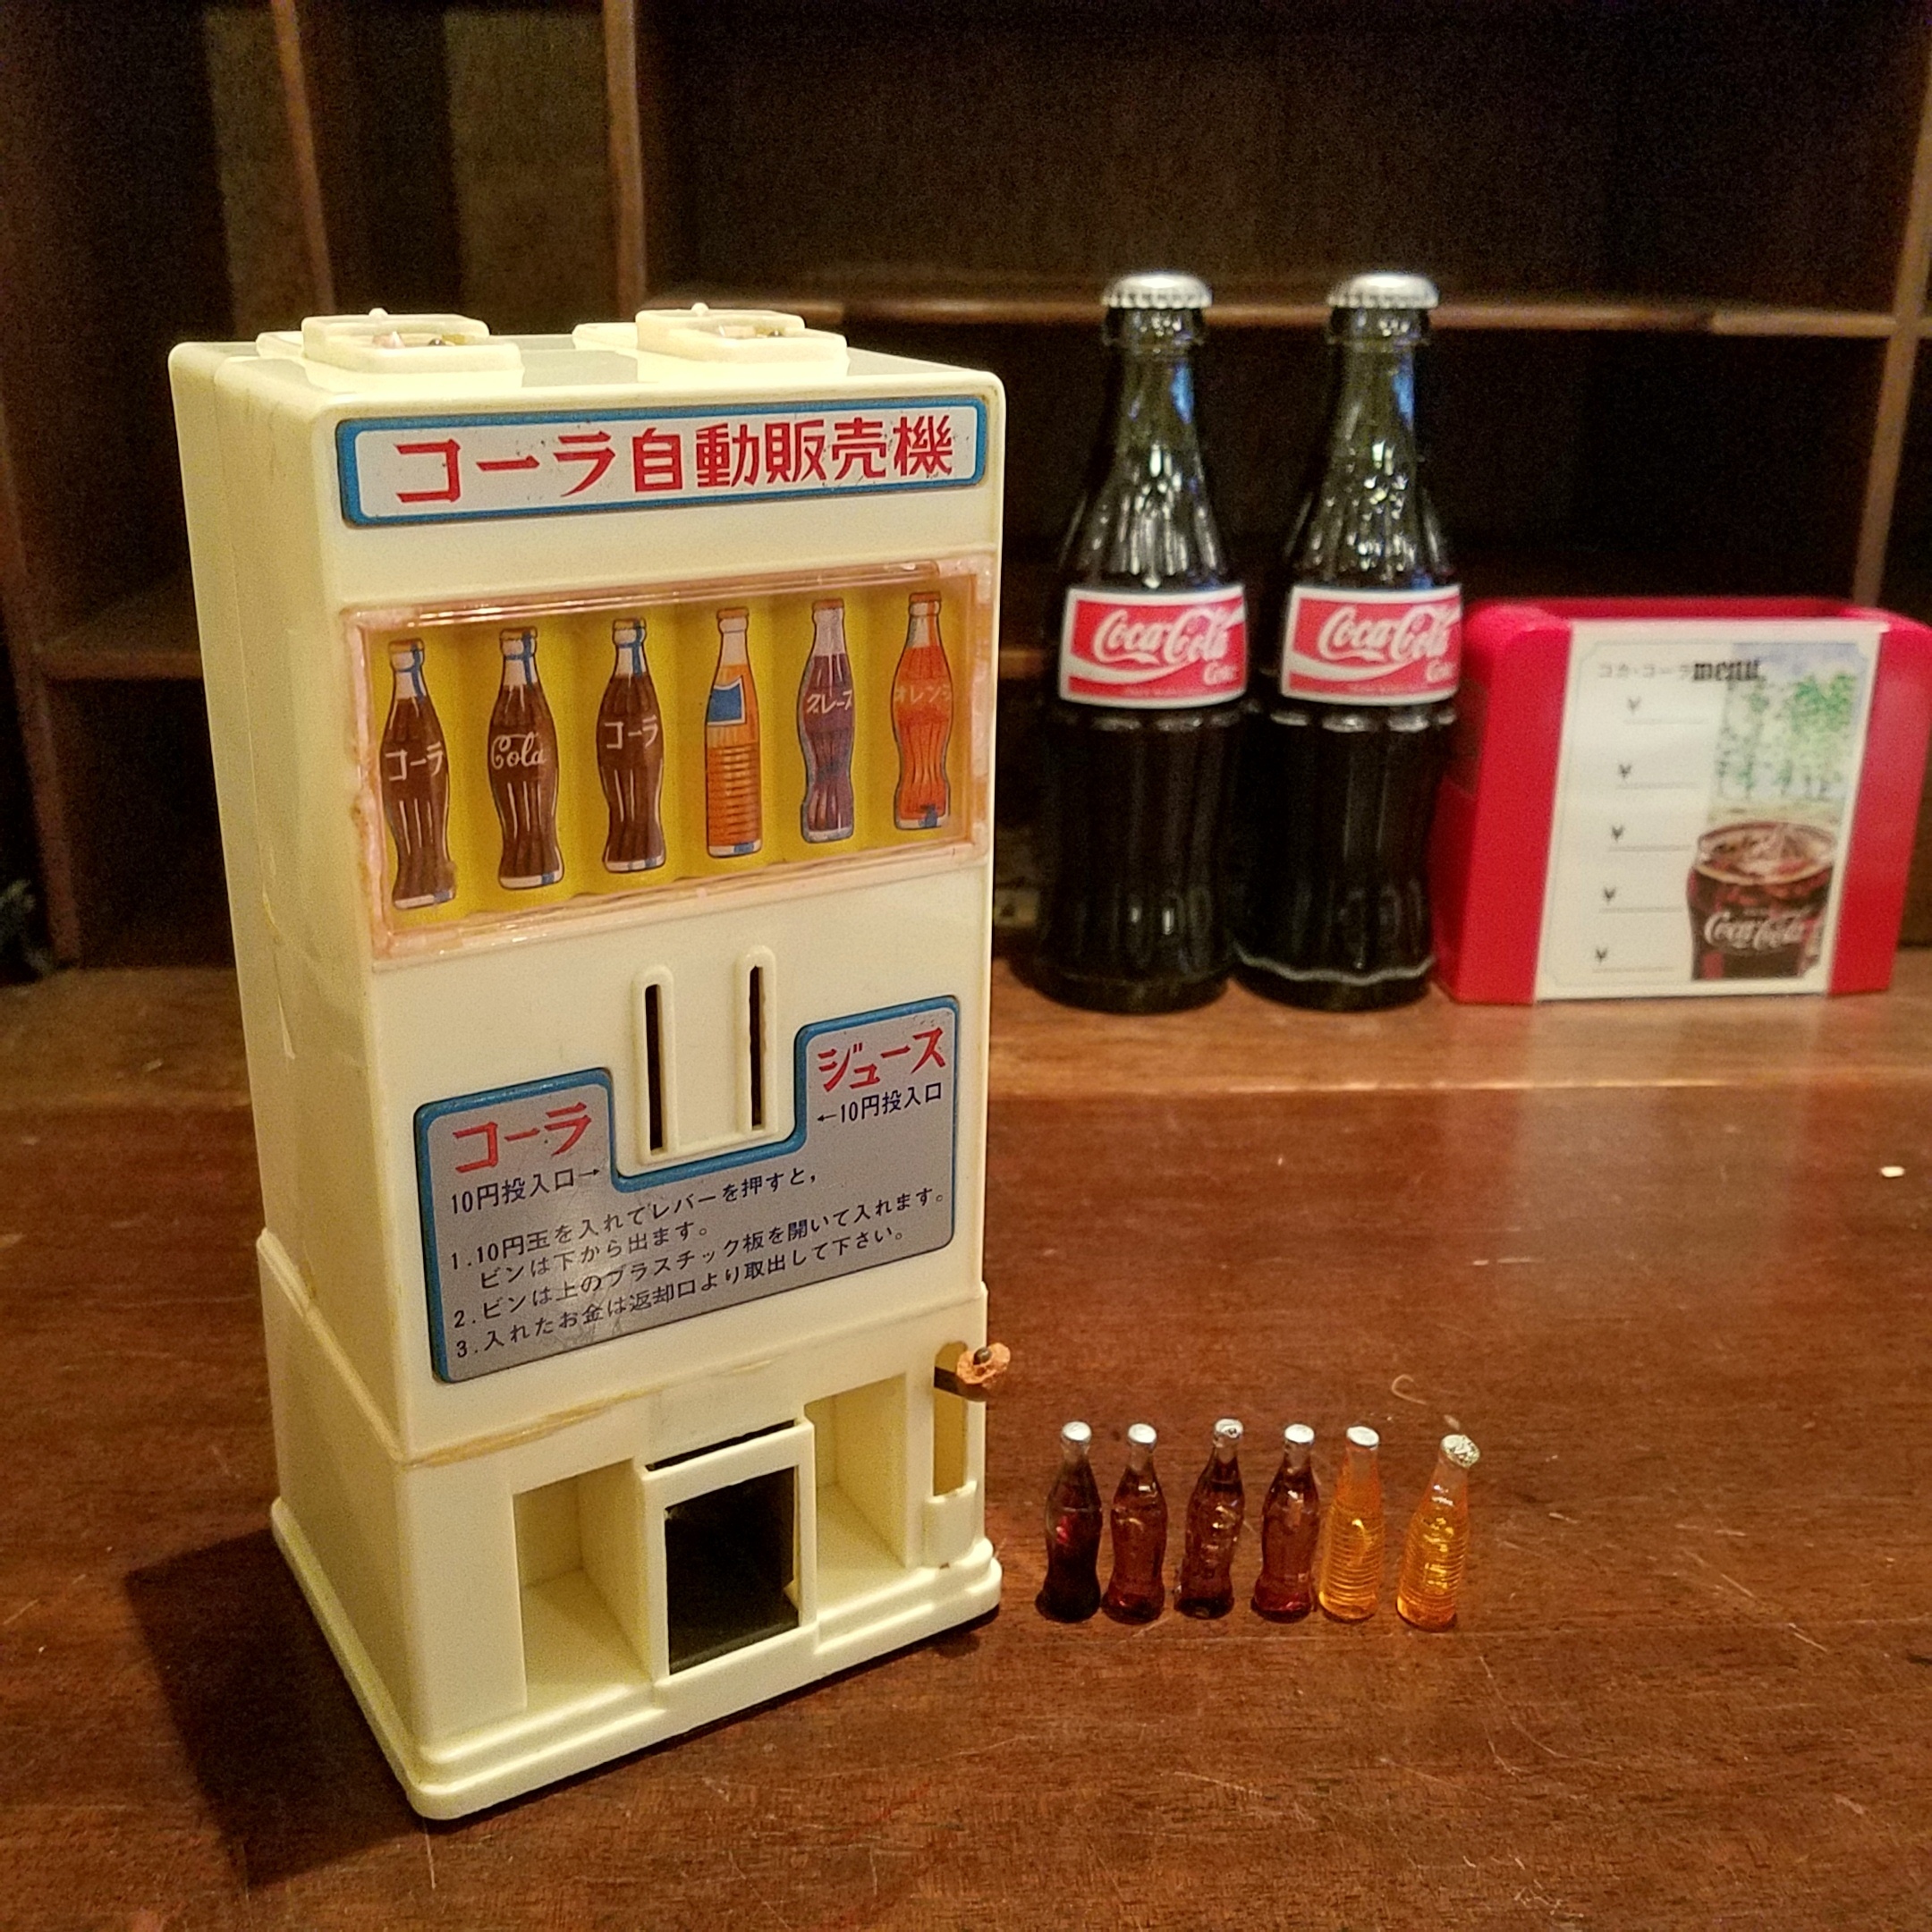 昭和レトロ玩具 ヨネザワ・コーラ自動販売機 - [Sold Out]過去の販売商品